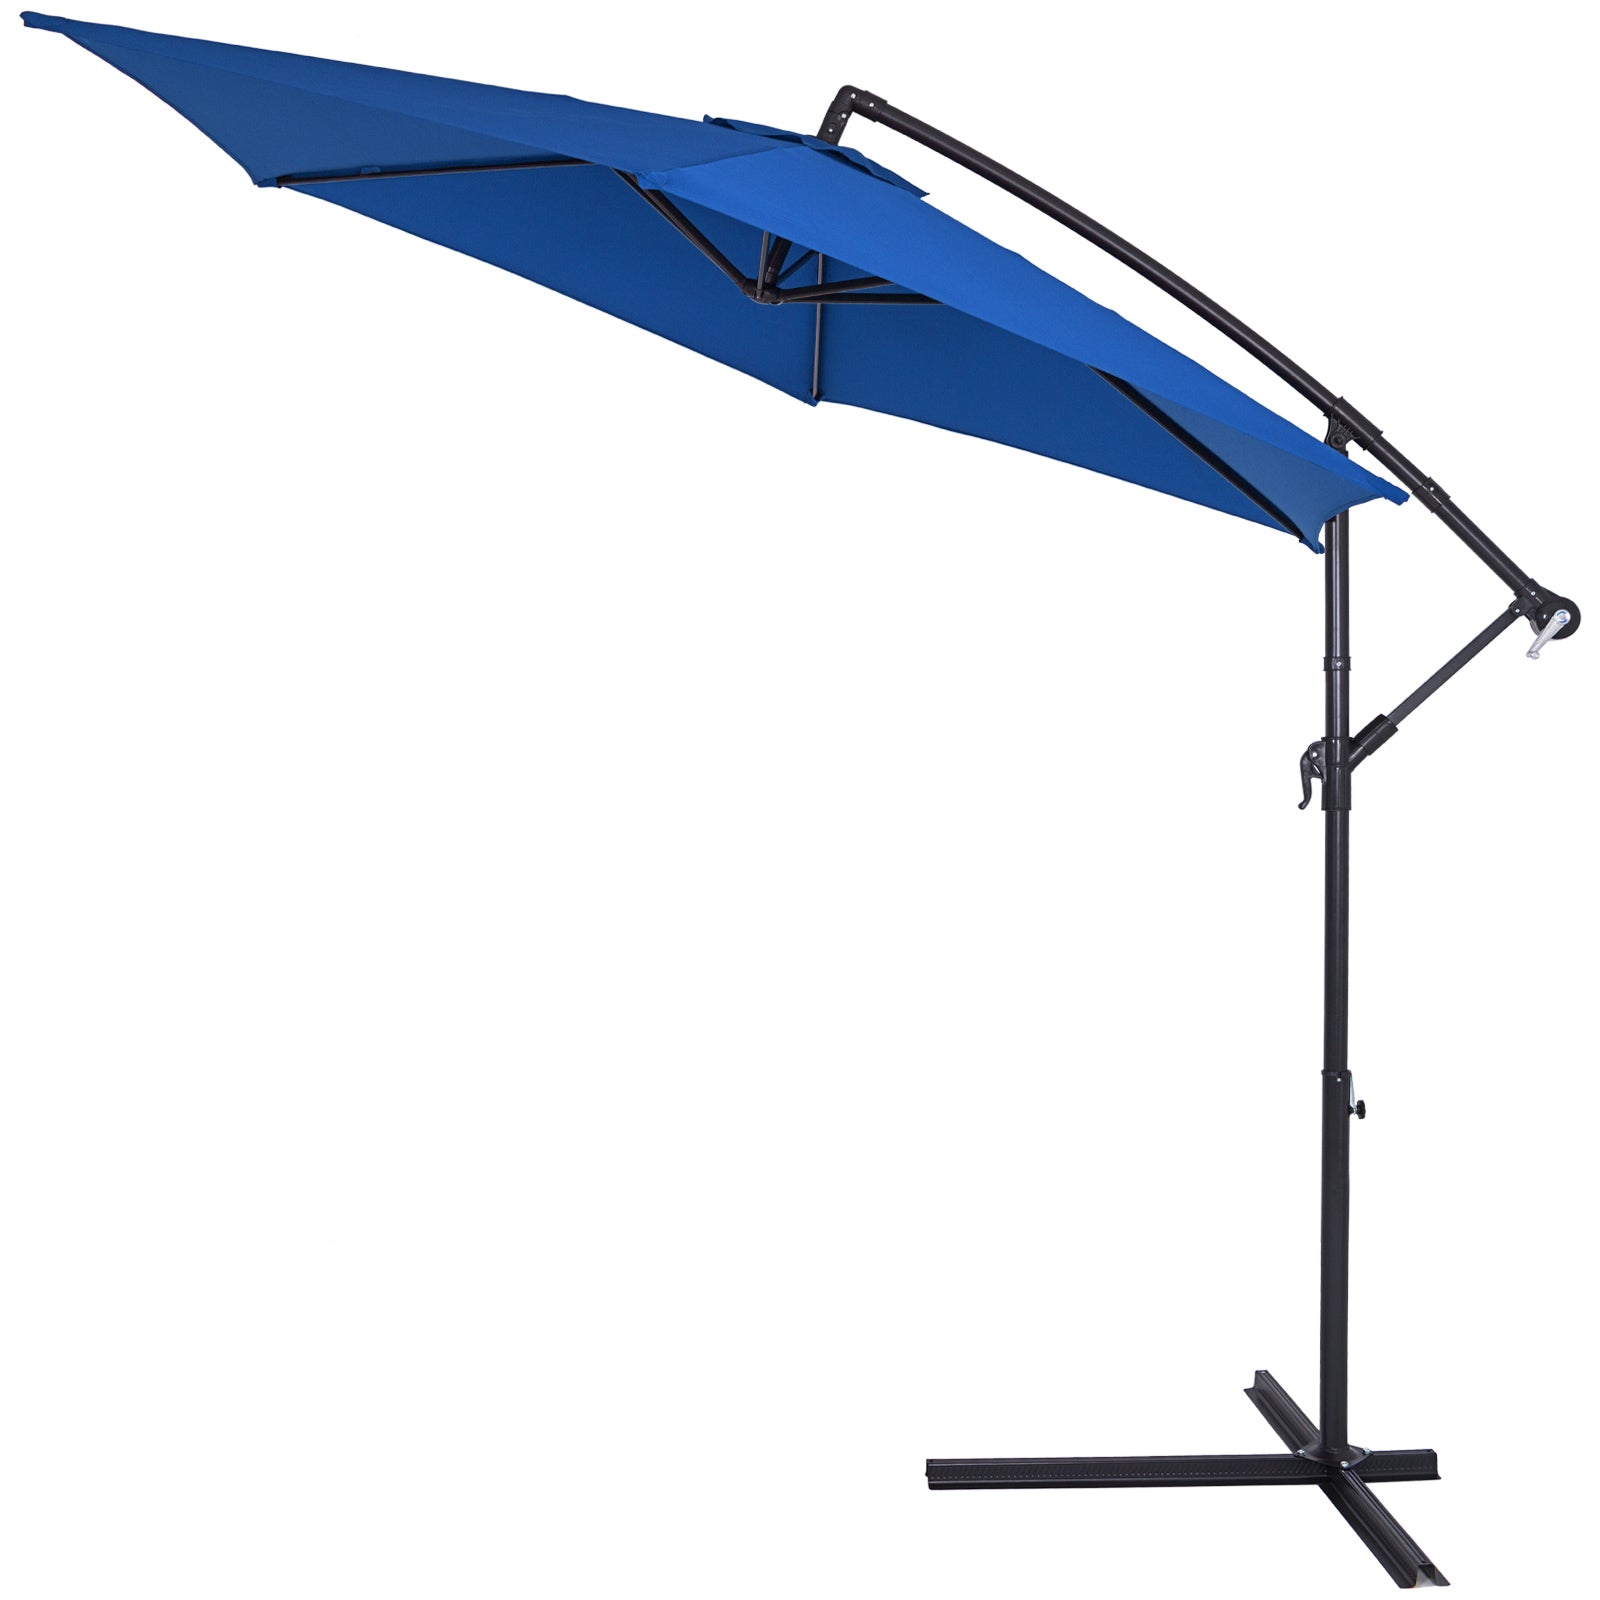 Hængeparasol - Parasol med arm - blå - aluminium Ø330cm UV beskyttelse 40+